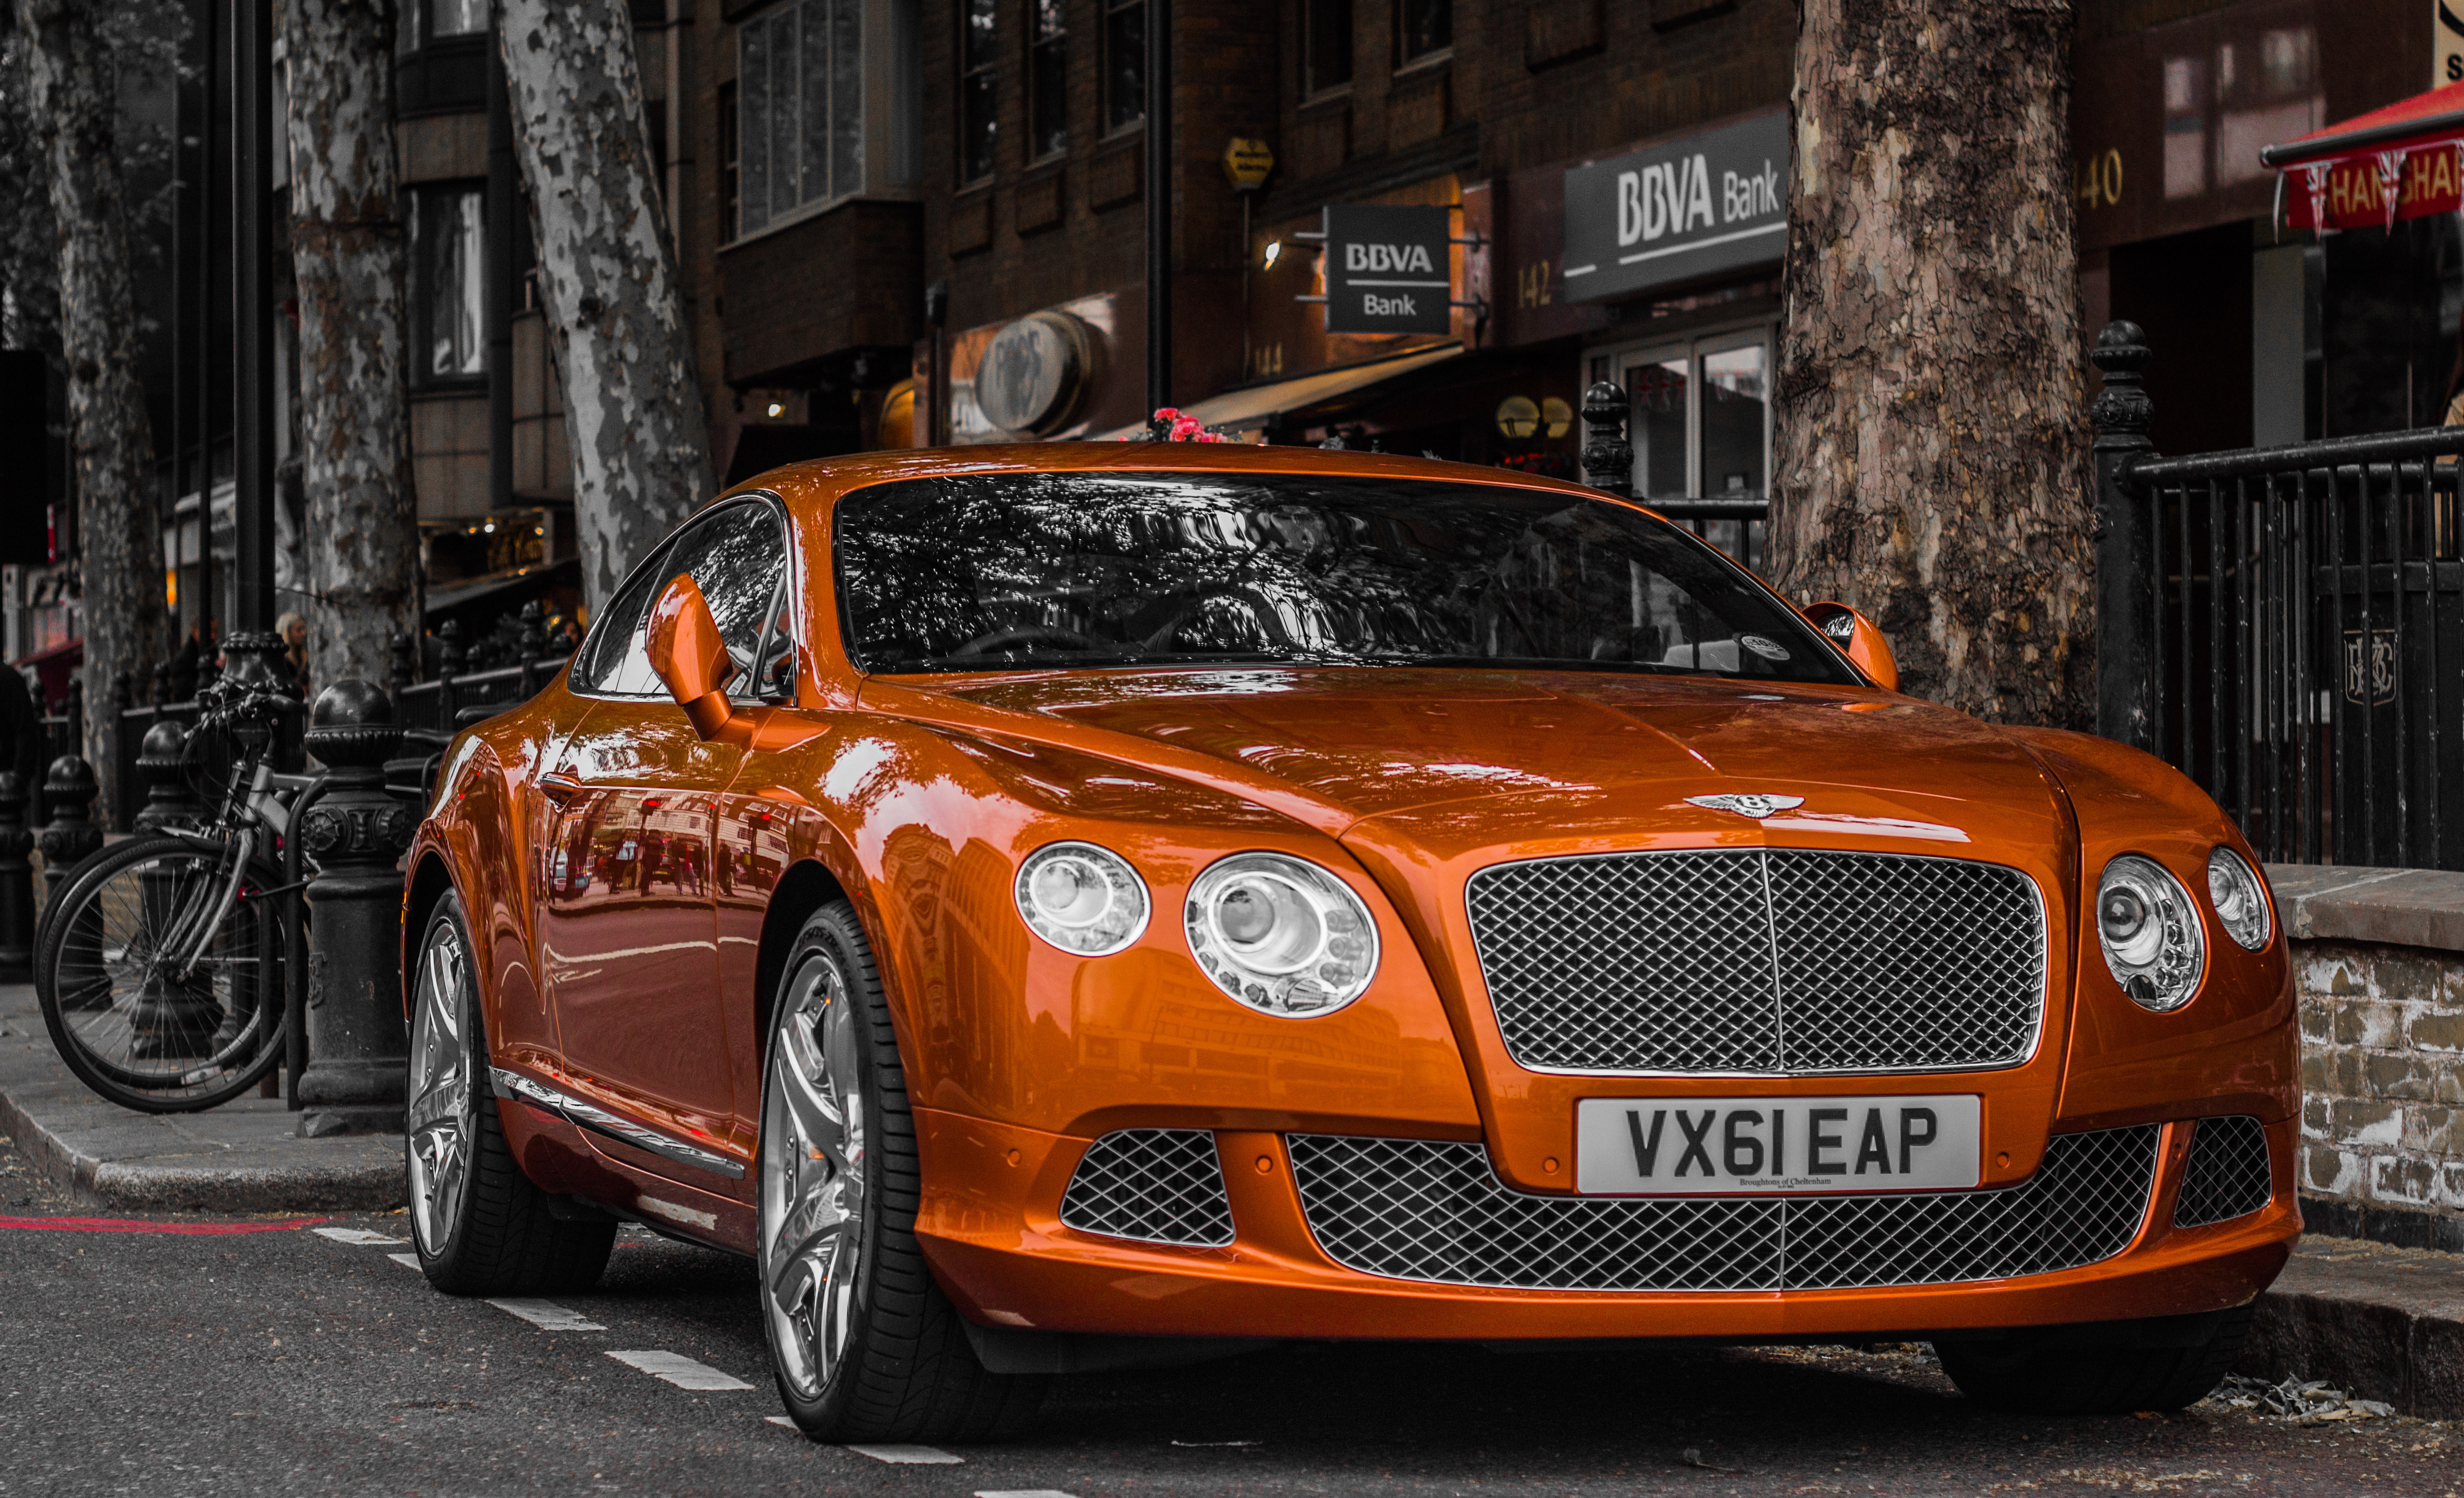 Free download wallpaper Bentley, Vehicles on your PC desktop